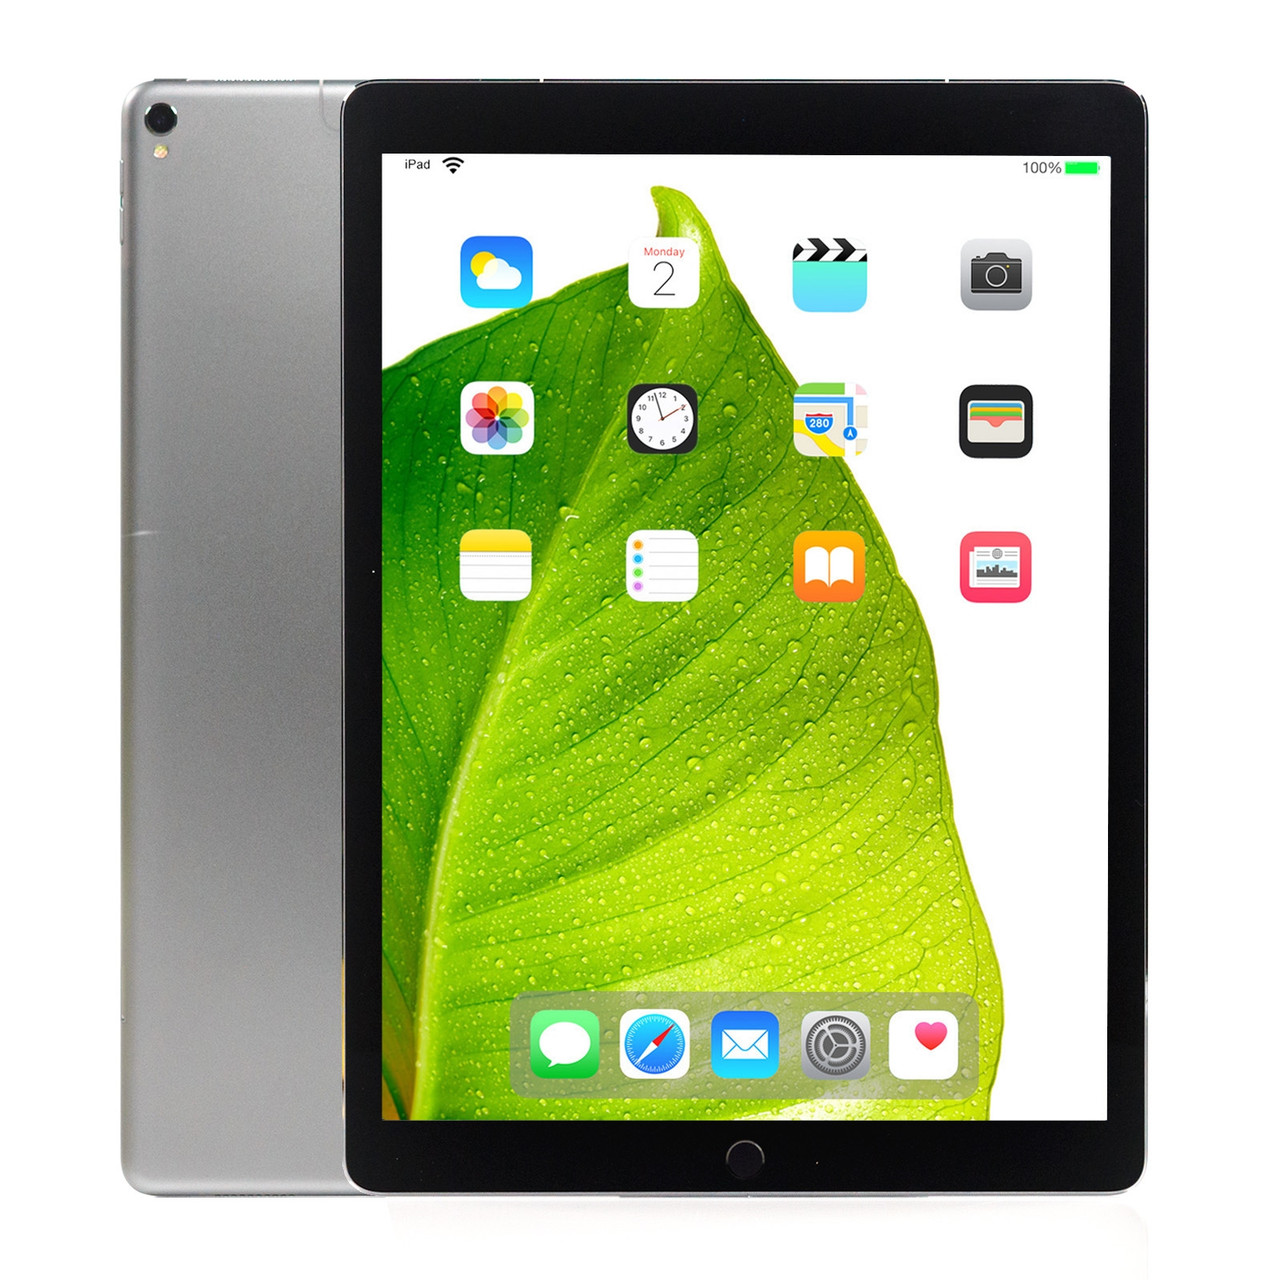 iPad Pro 12.9 (2nd gen) Especificaciones y precios - MQDA2